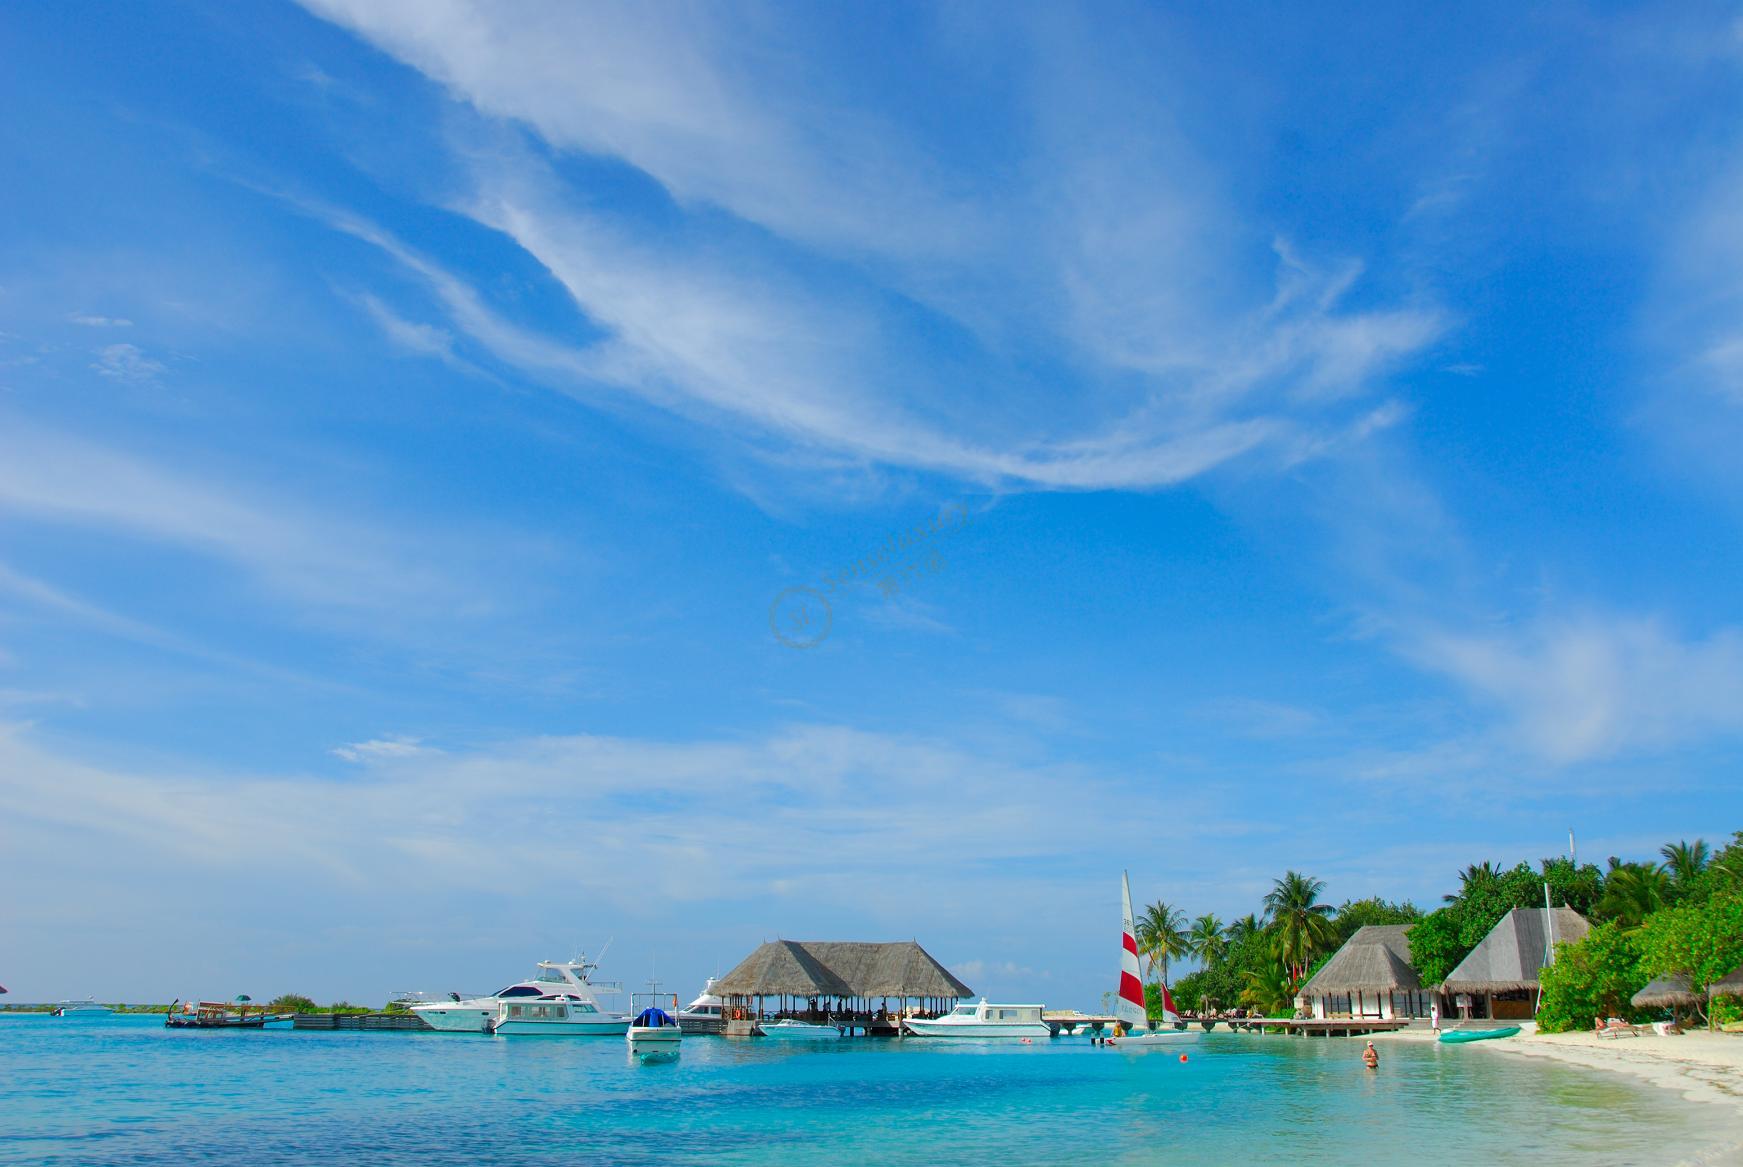 马尔代夫宁静岛W Retreat Resort & Spa Maldives – 爱岛人 海岛旅行专家